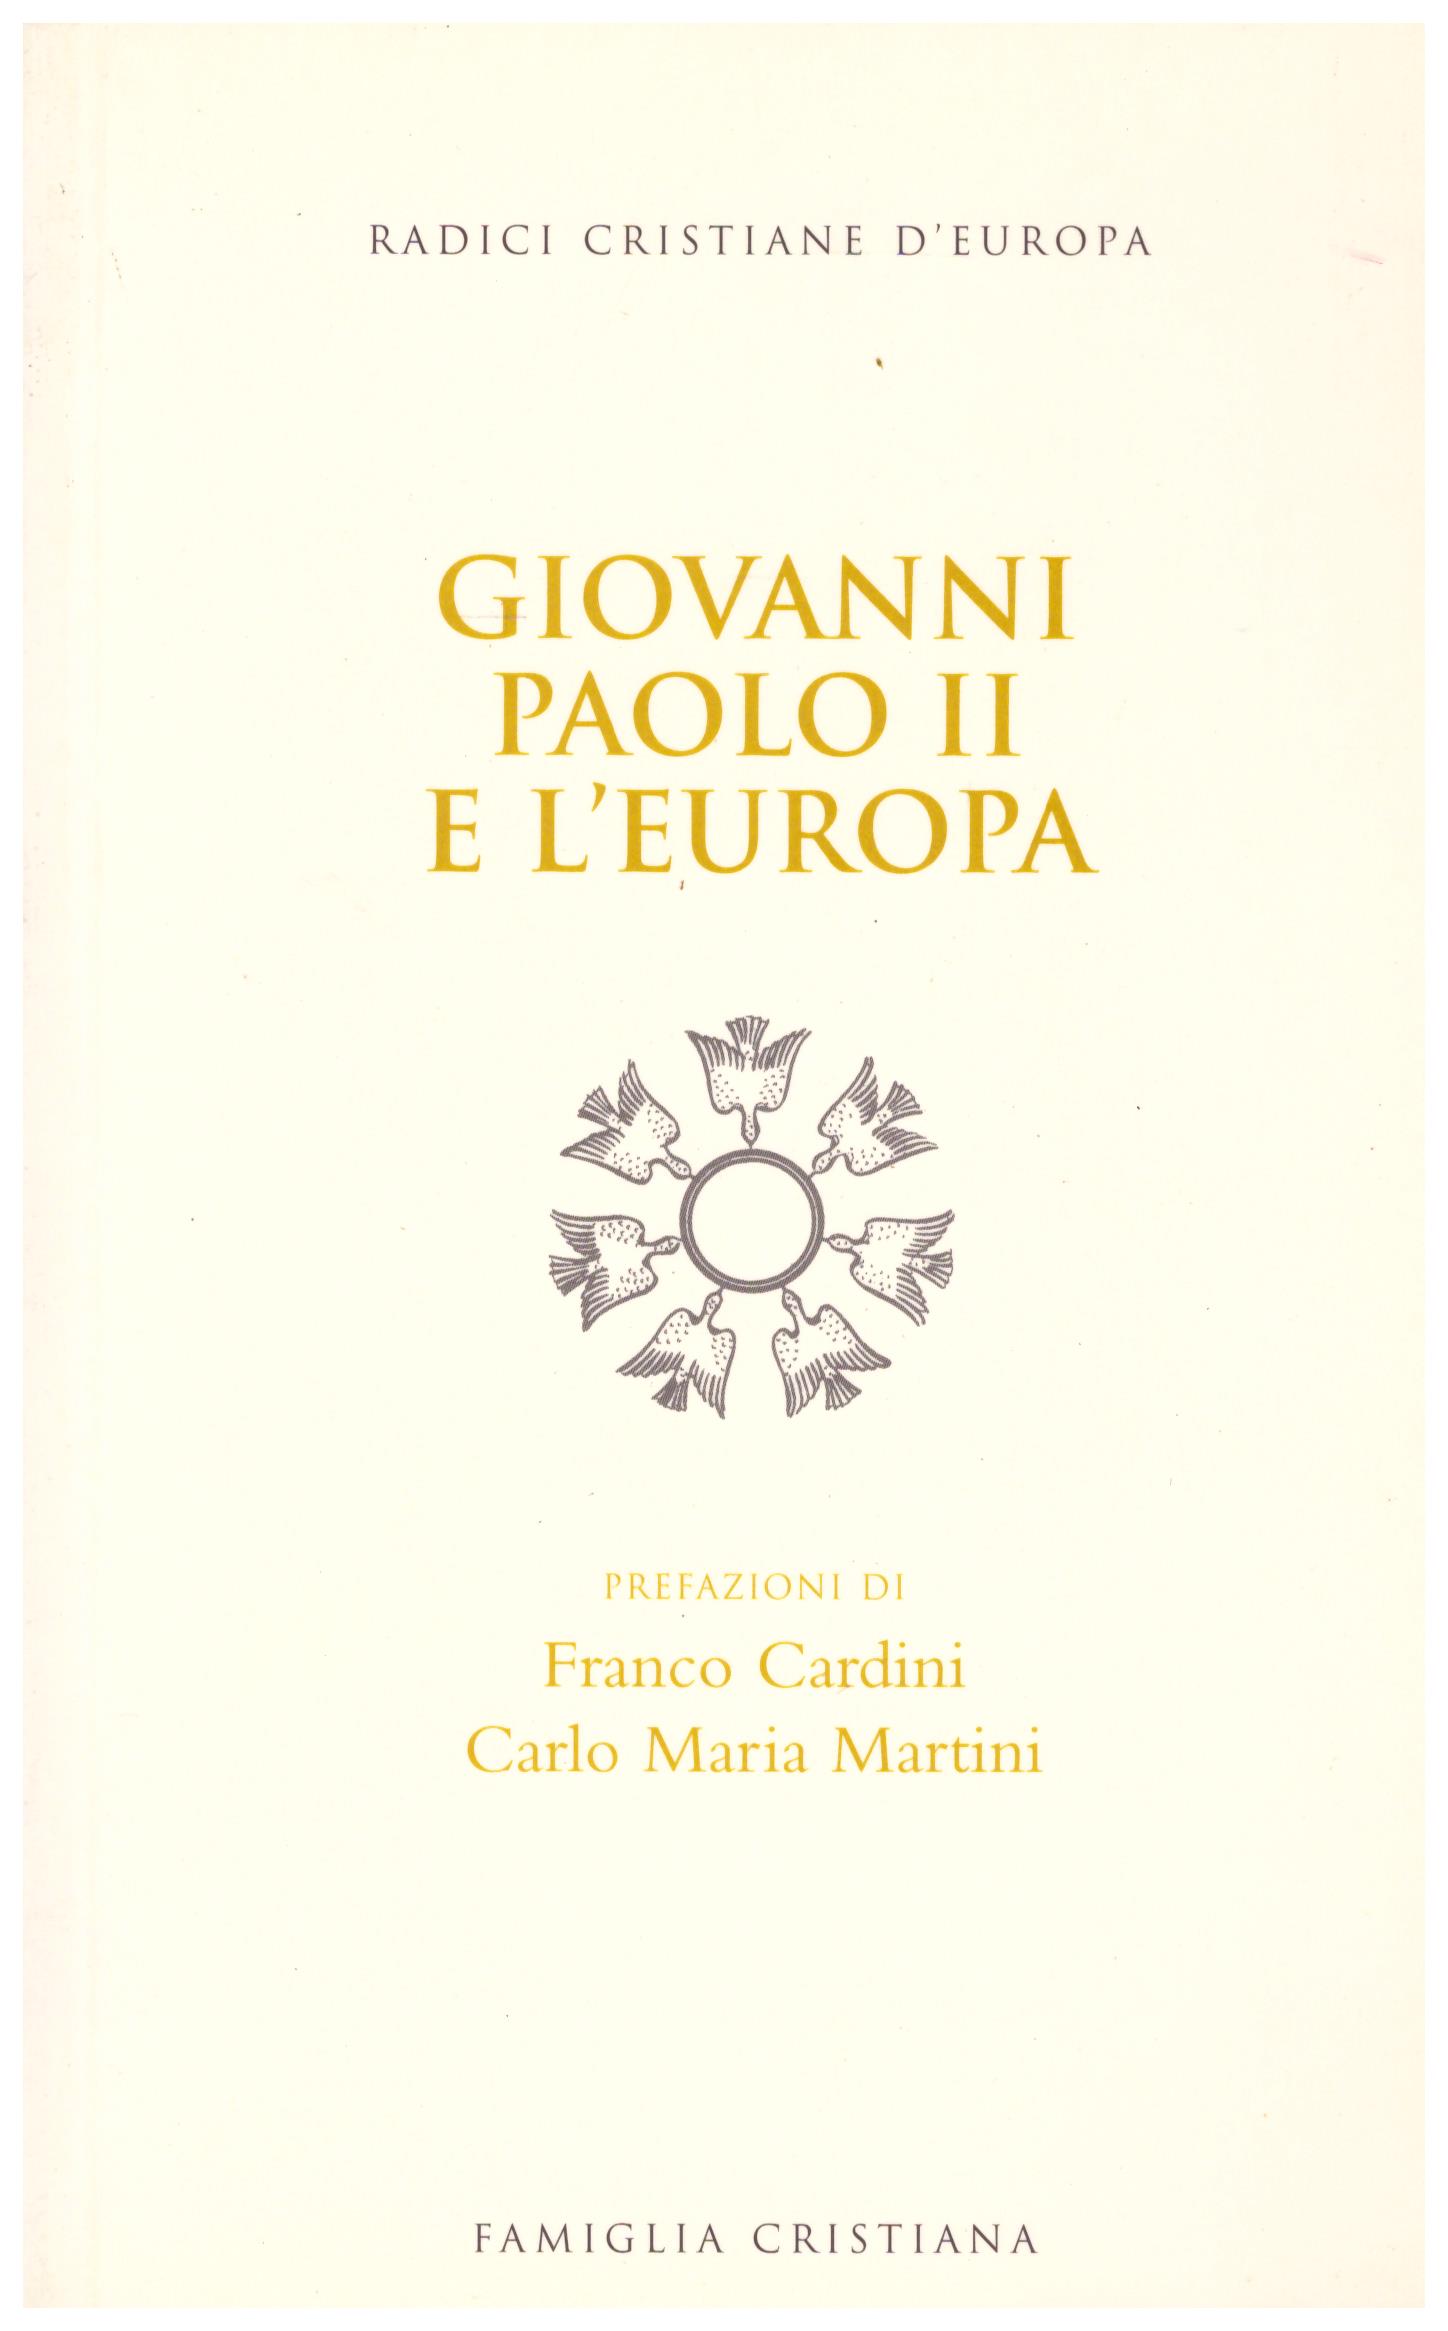 Titolo: Giovanni Paolo II e l'Europa Autore: AA.VV. Editore:  Famiglia Cristiana, 2004